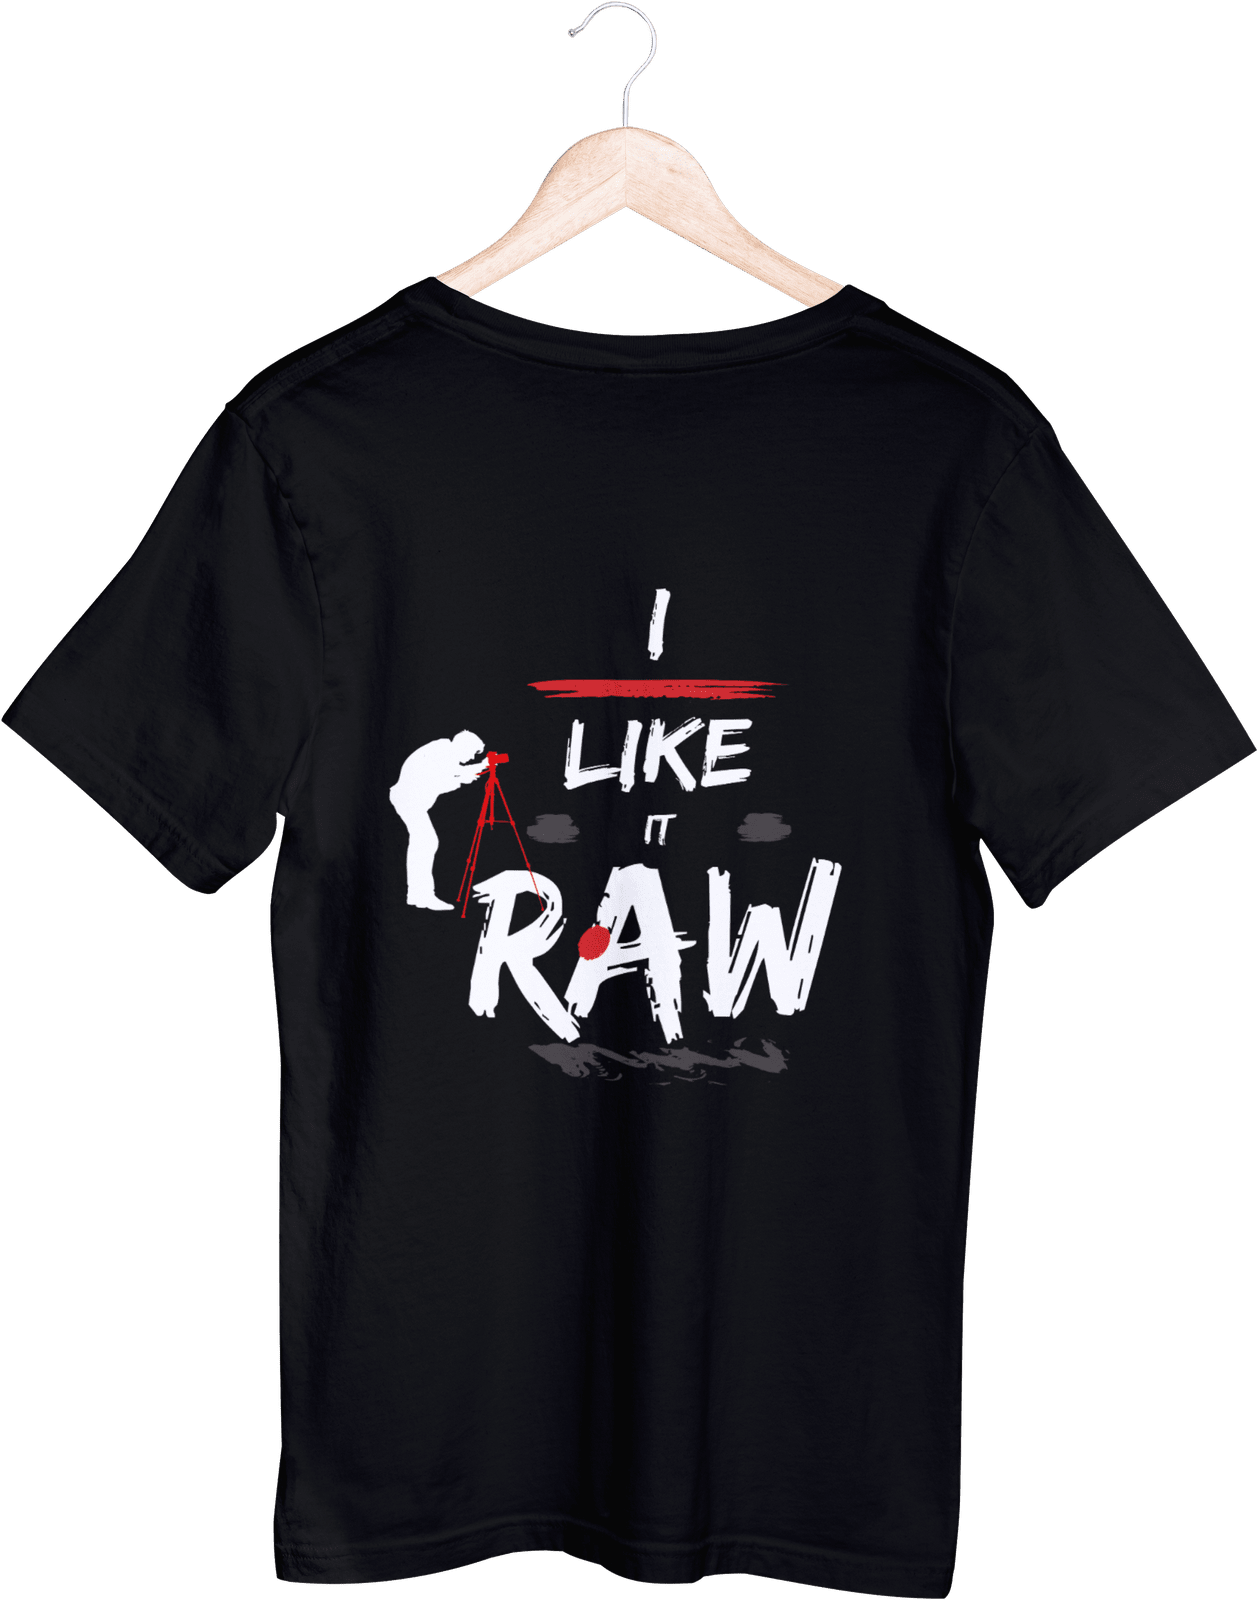 I Like it Raw (Unisex T-Shirt)